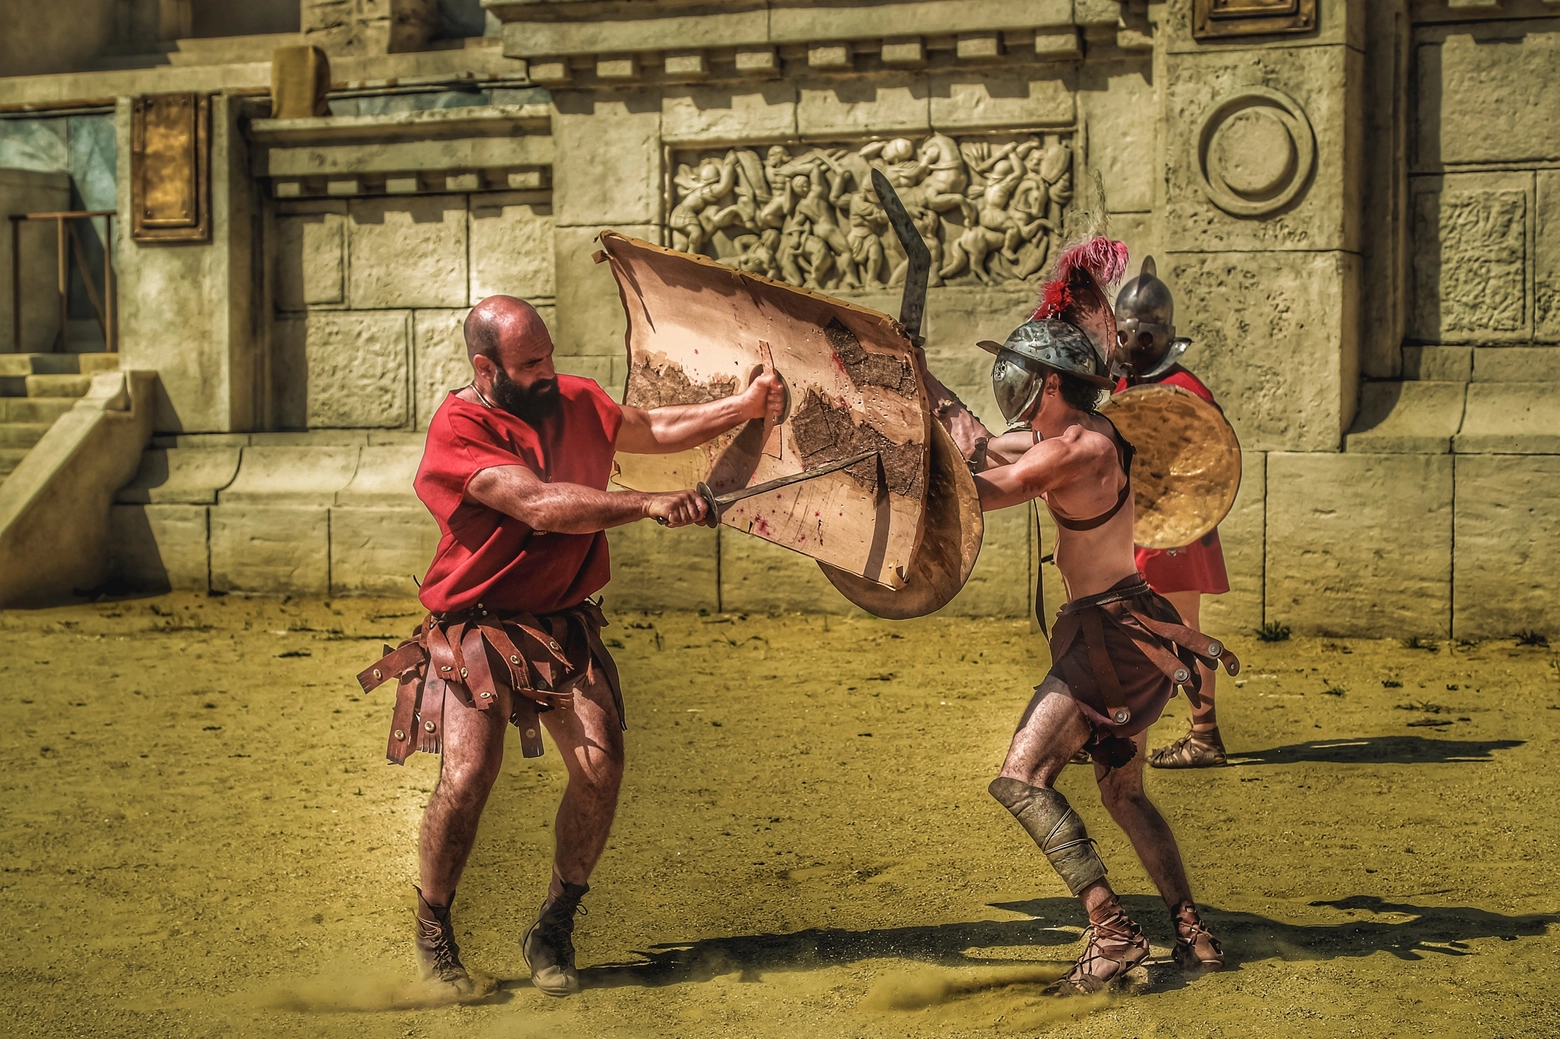 Una ricostruzione scenica della lotta tra gladiatori per lo spettacolo Roma on fire